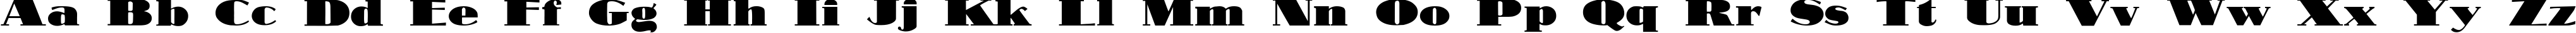 Пример написания английского алфавита шрифтом Nubian Regular